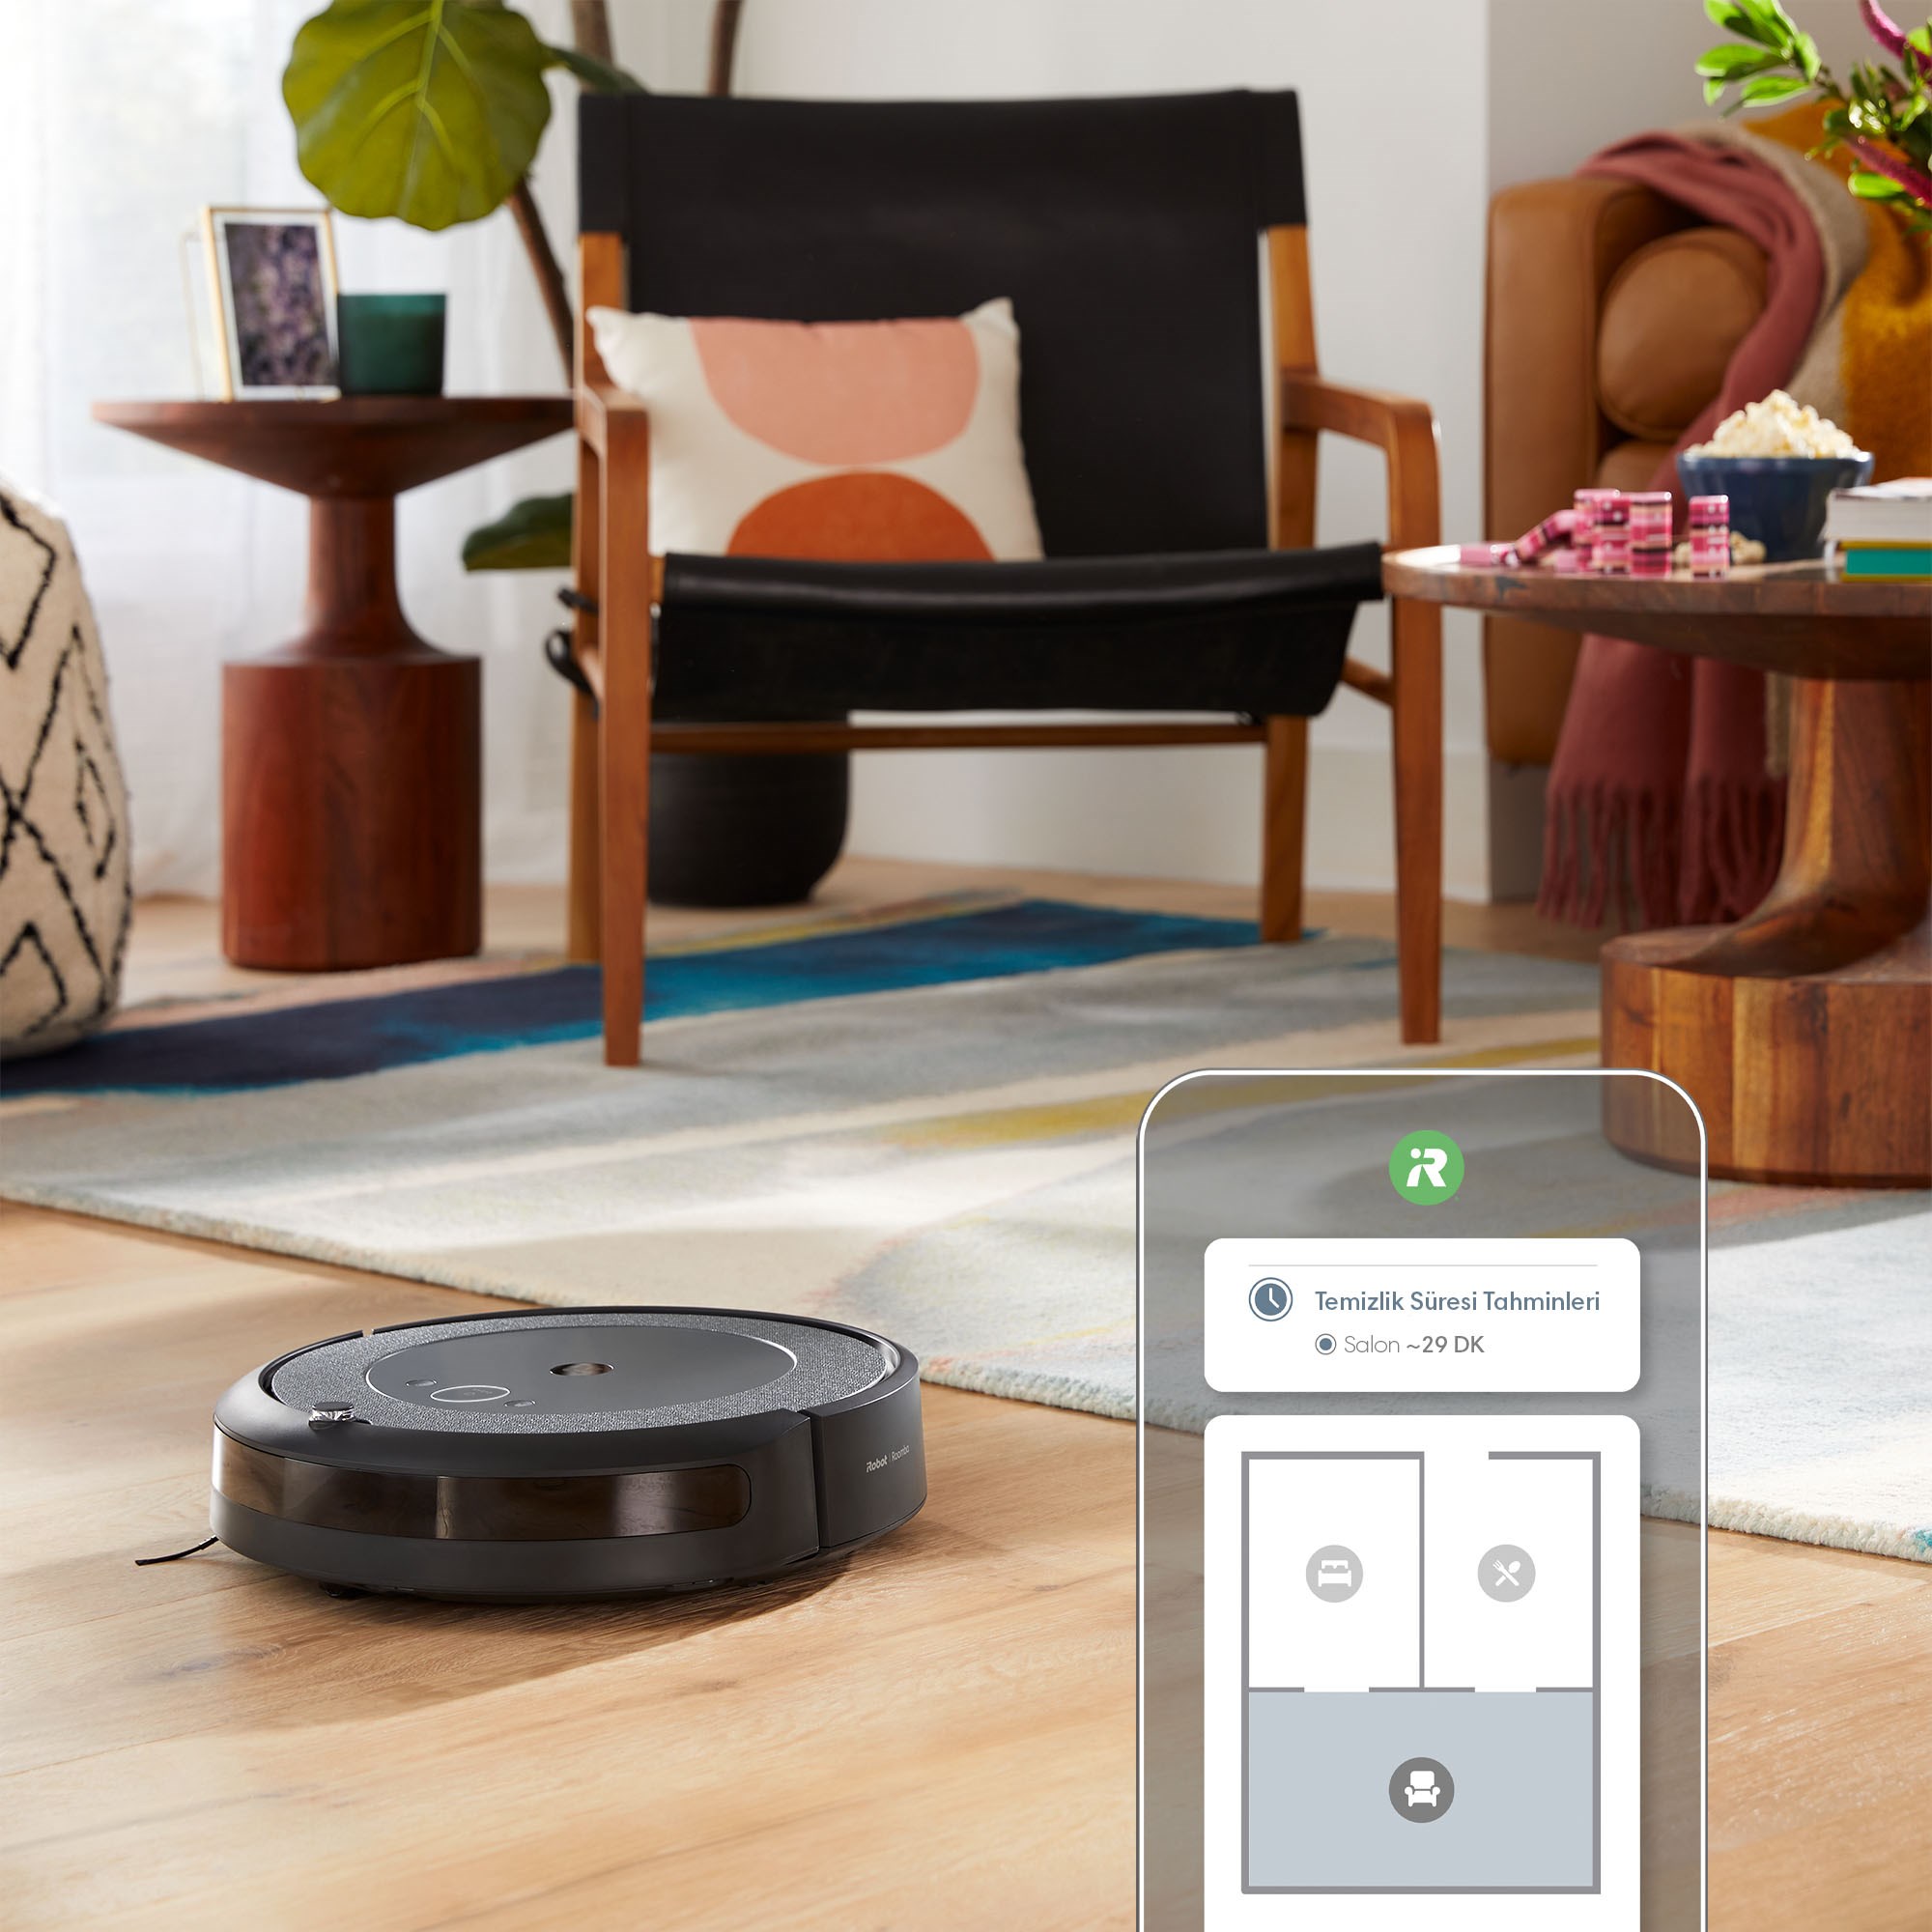 iRobot Roomba serisinin 20. yaşına özel indirim kampanyası